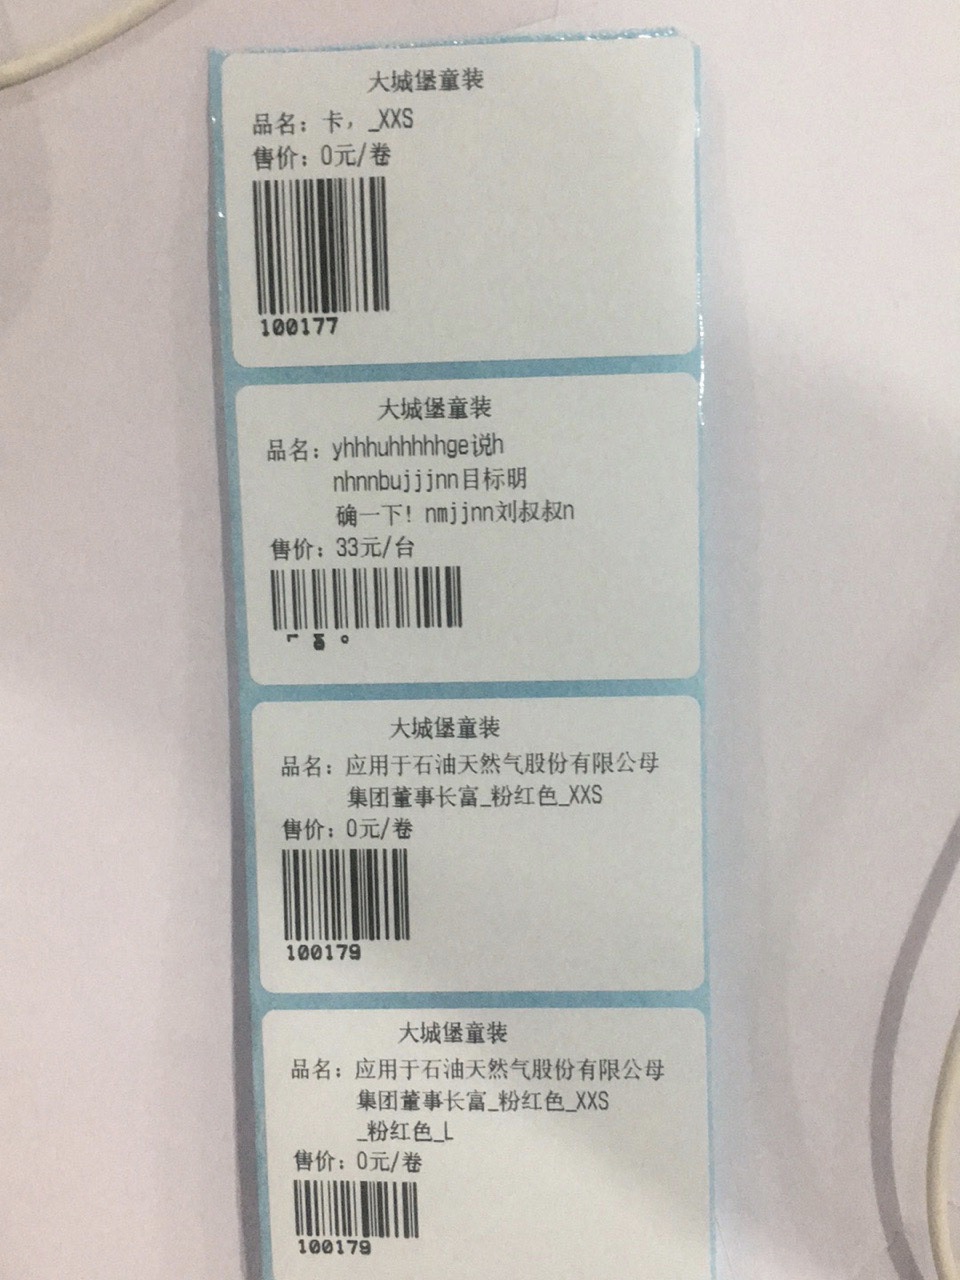 iOS蓝牙打印价签：【商品条码、品名、零售价、规格信息等】（商品名称支持换行显示）